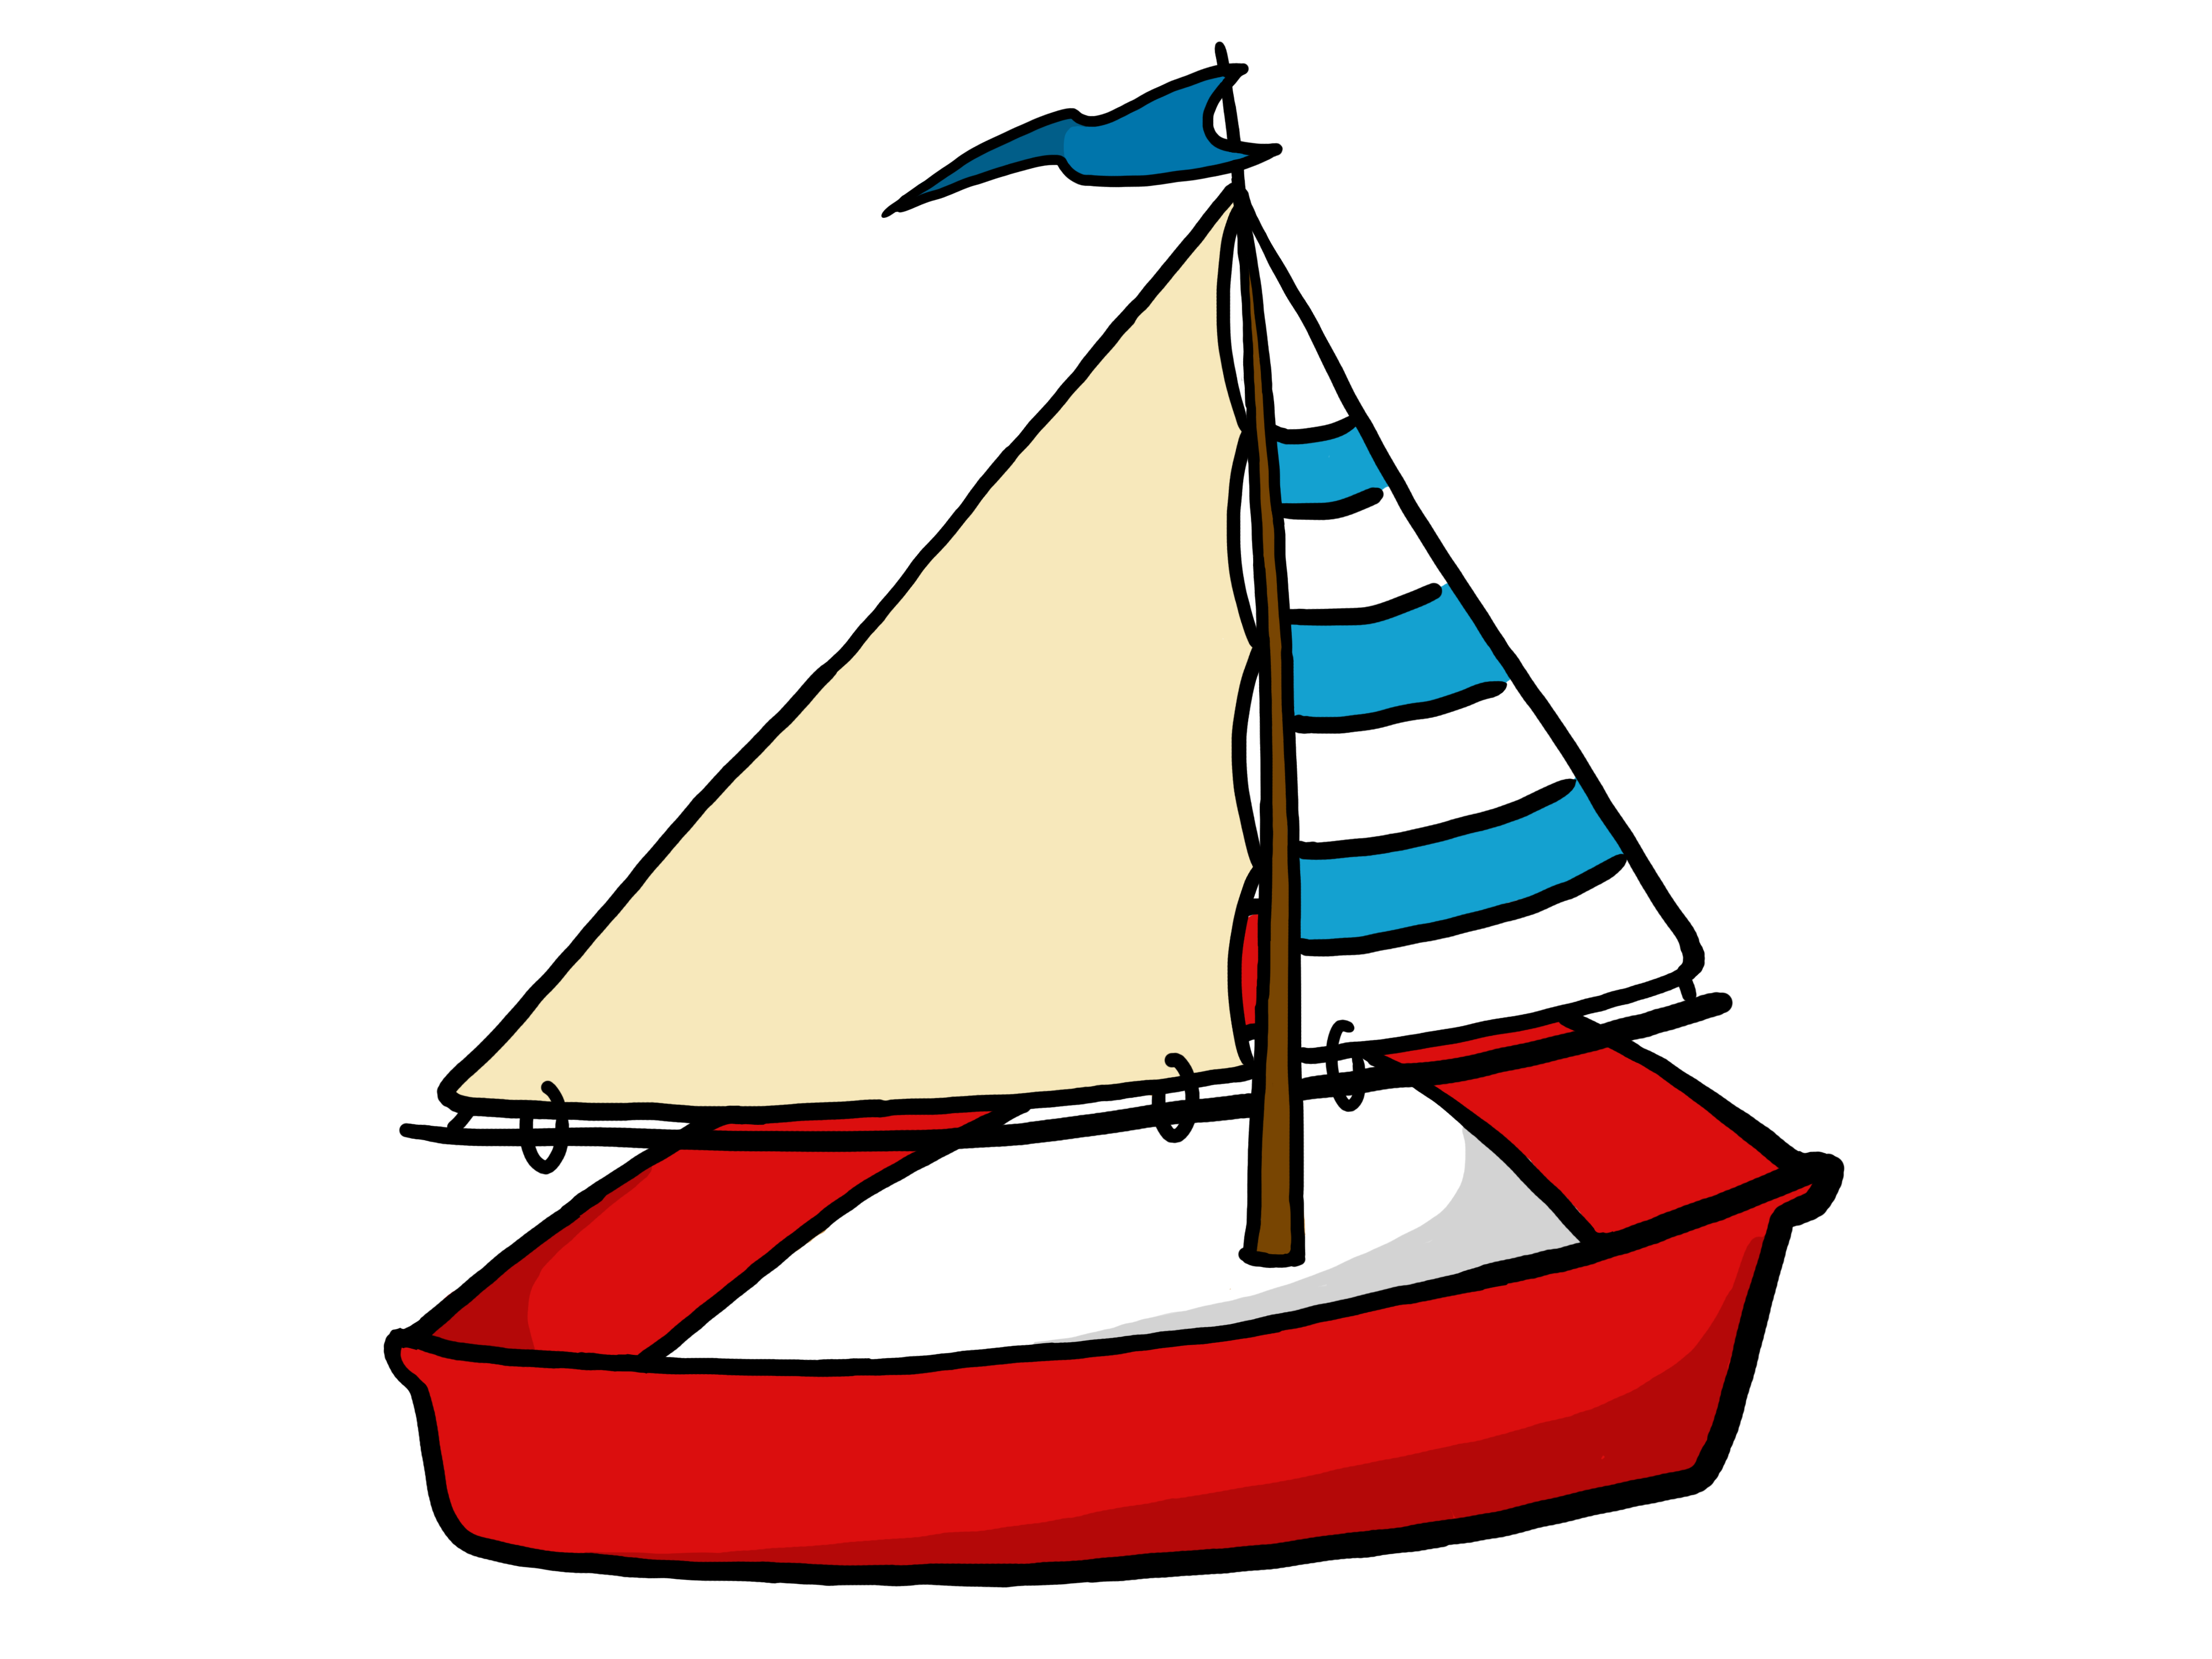 Sailboat yacht cartoon clip art dromggf top